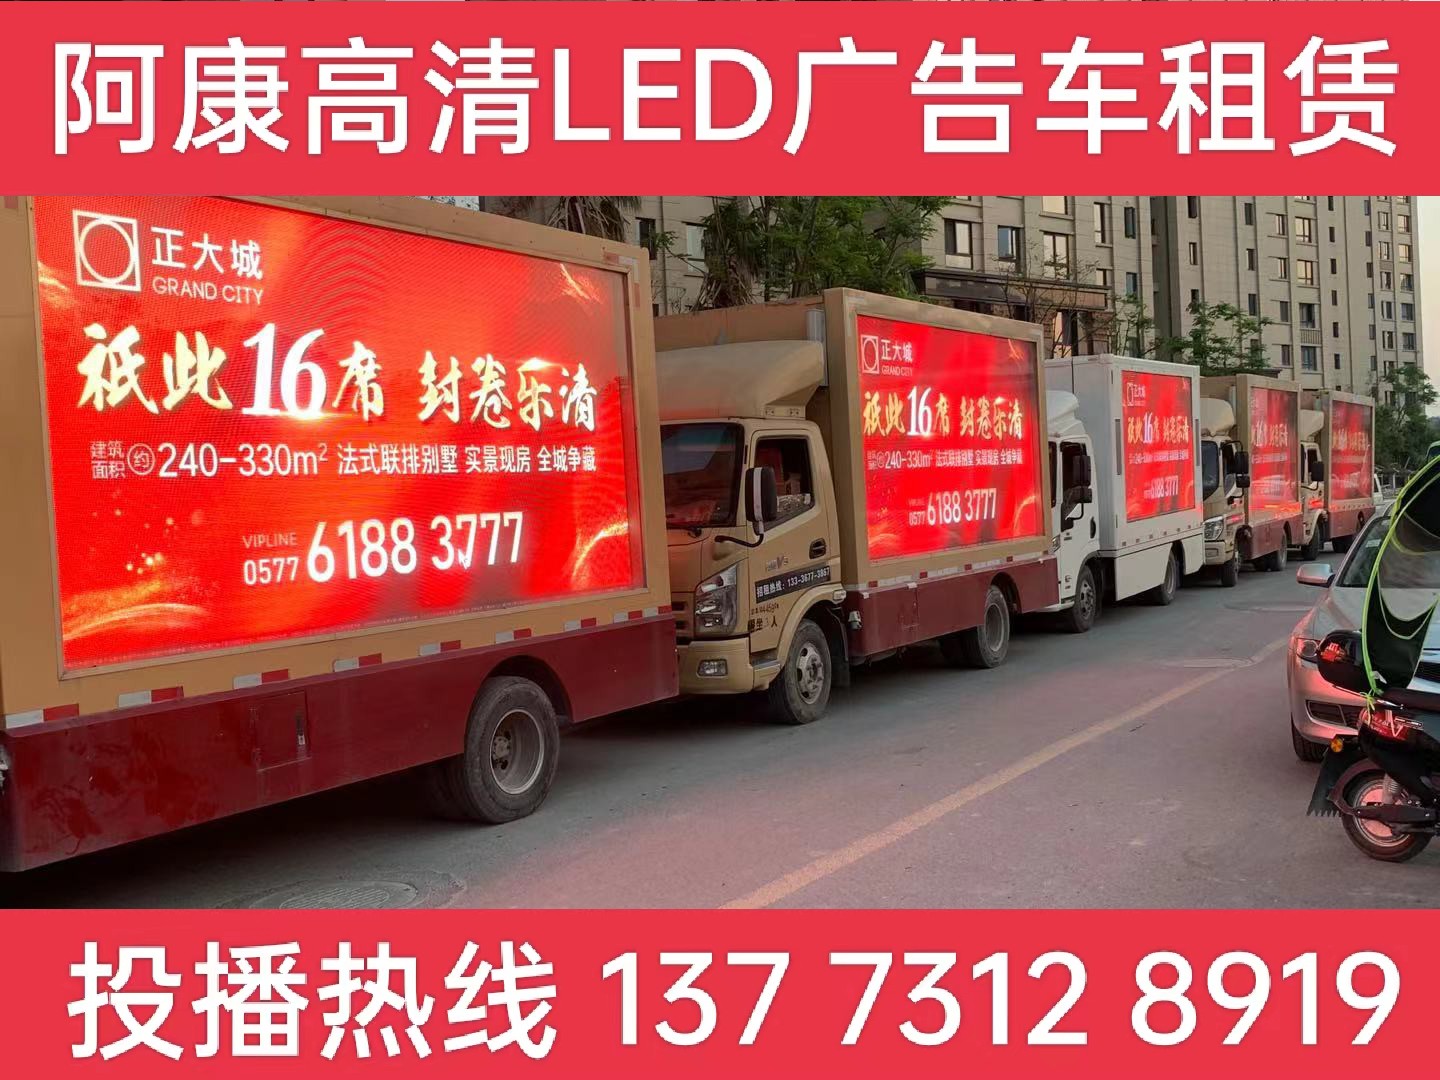 昆山LED广告车出租